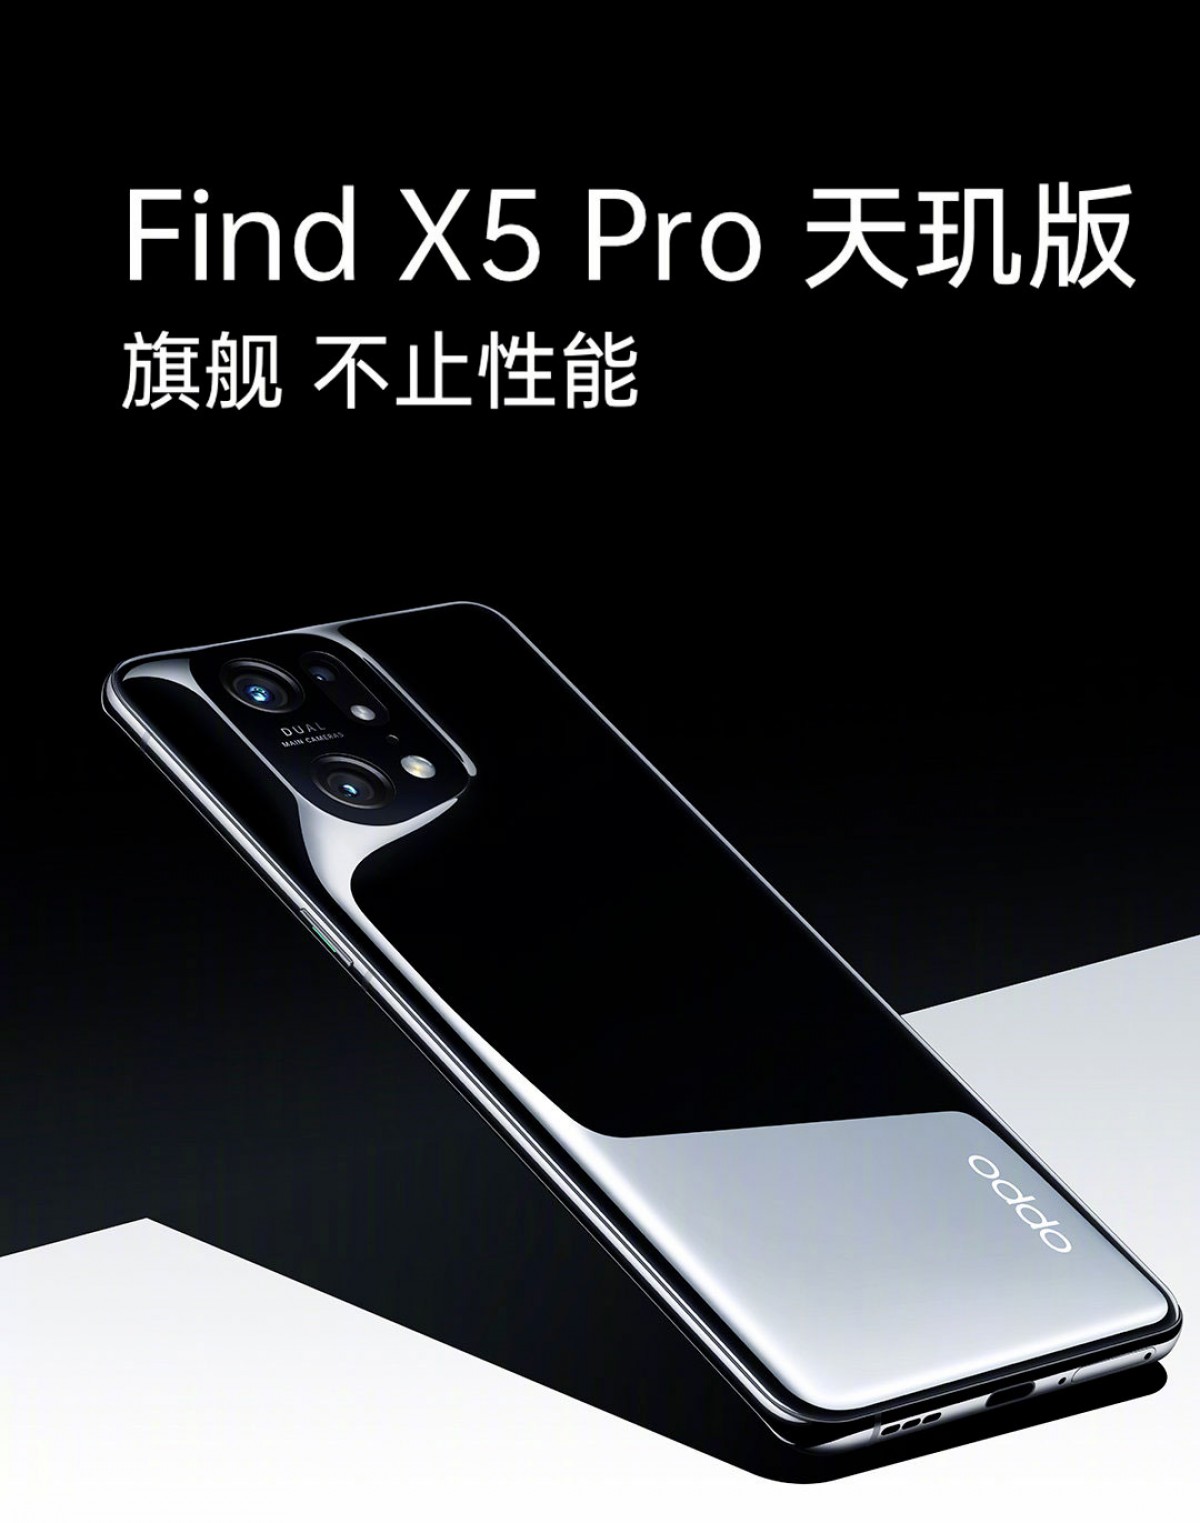 Original OPPO find X5 Pro 5G Snapdragon 8 Gen 1 Dimensity 9000 NFC